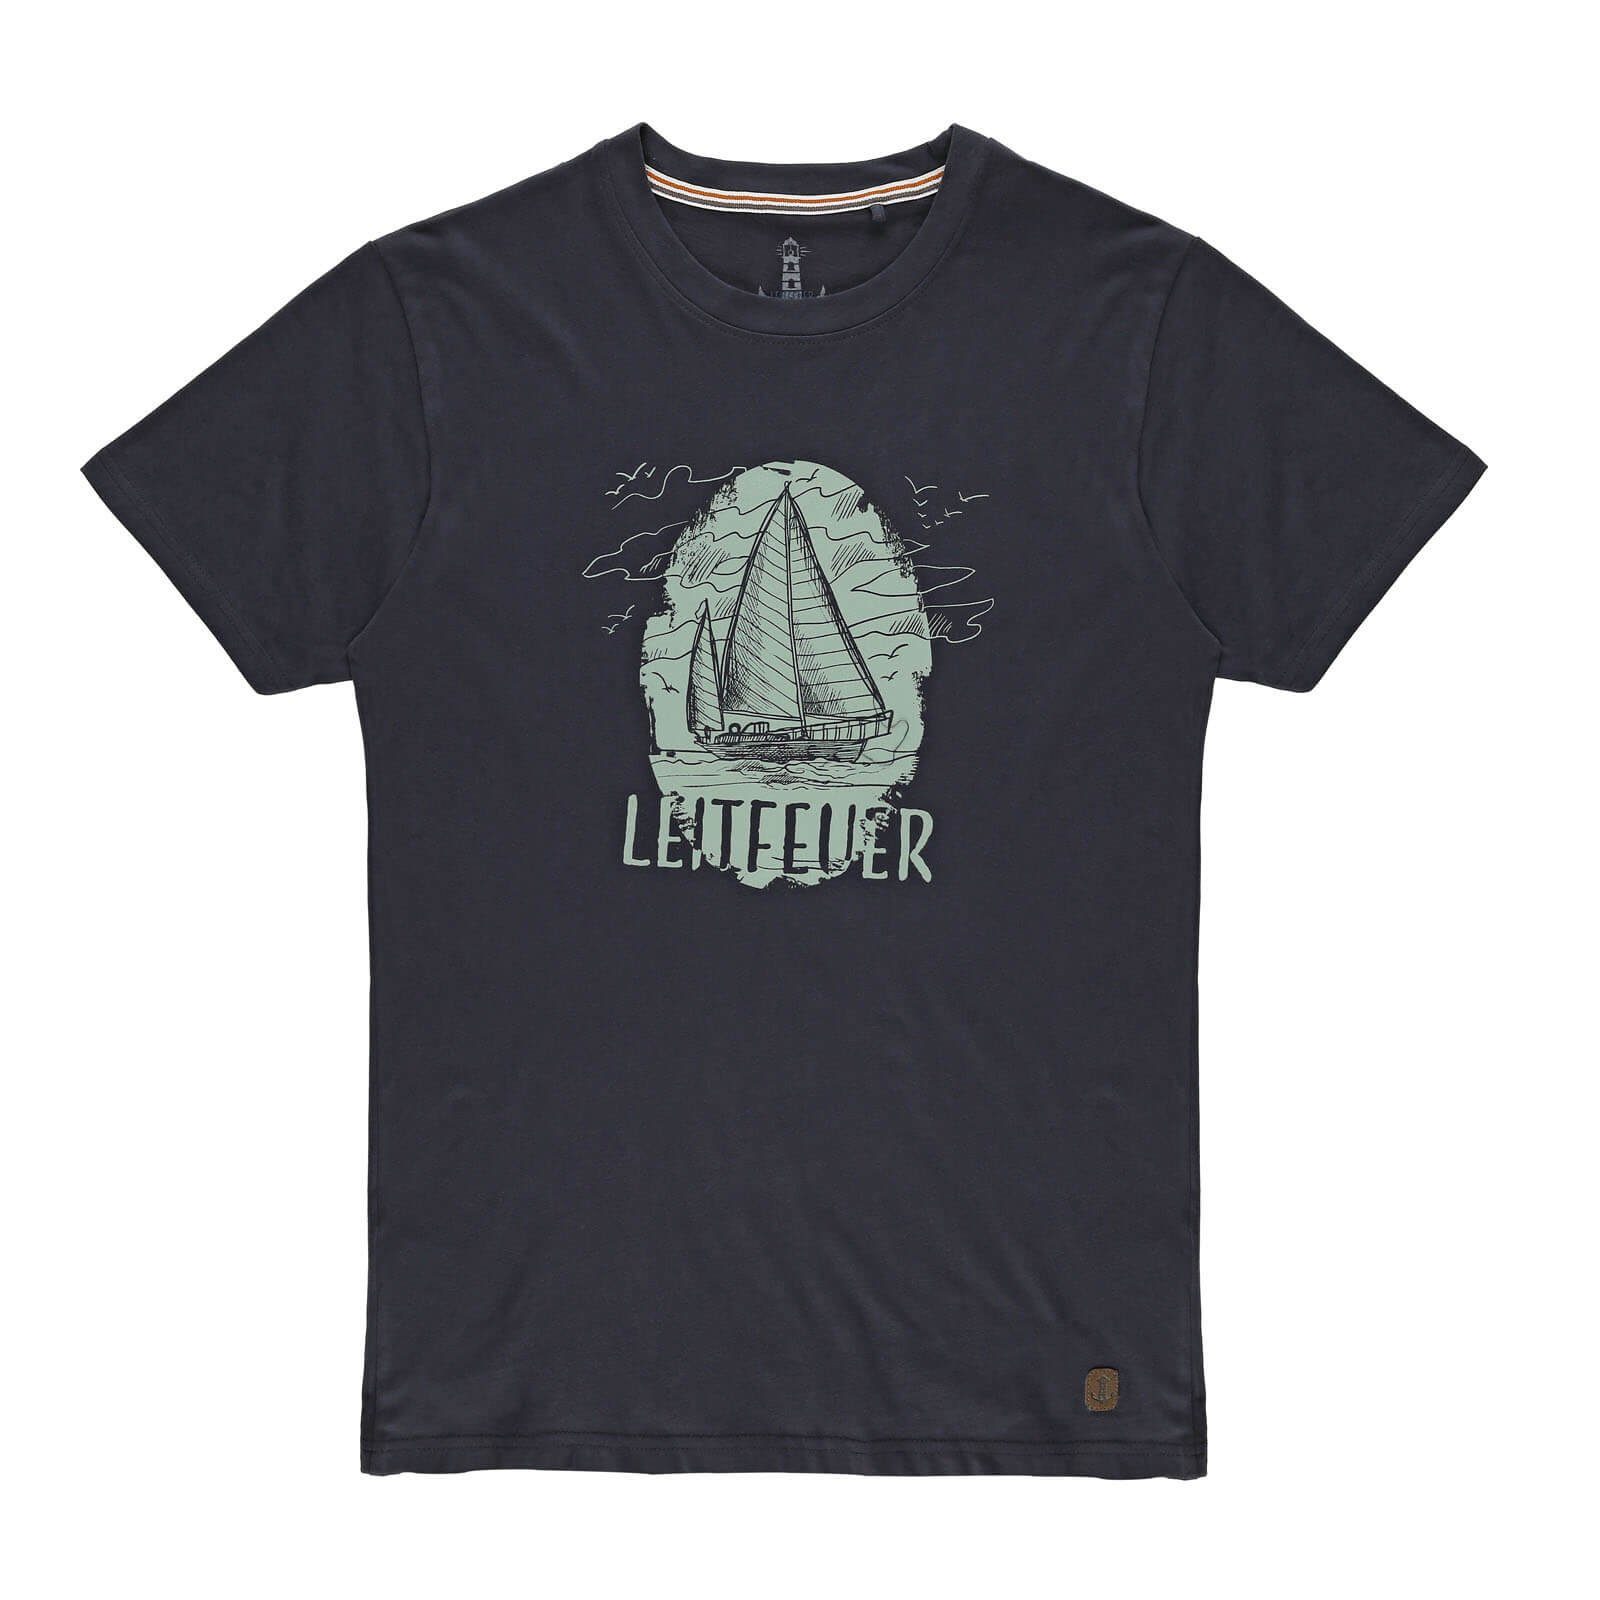 Rundhalsausschnitt T-Shirt Herren mit Front-Print Segelschiff Leitfeuer und navy Sommershirt